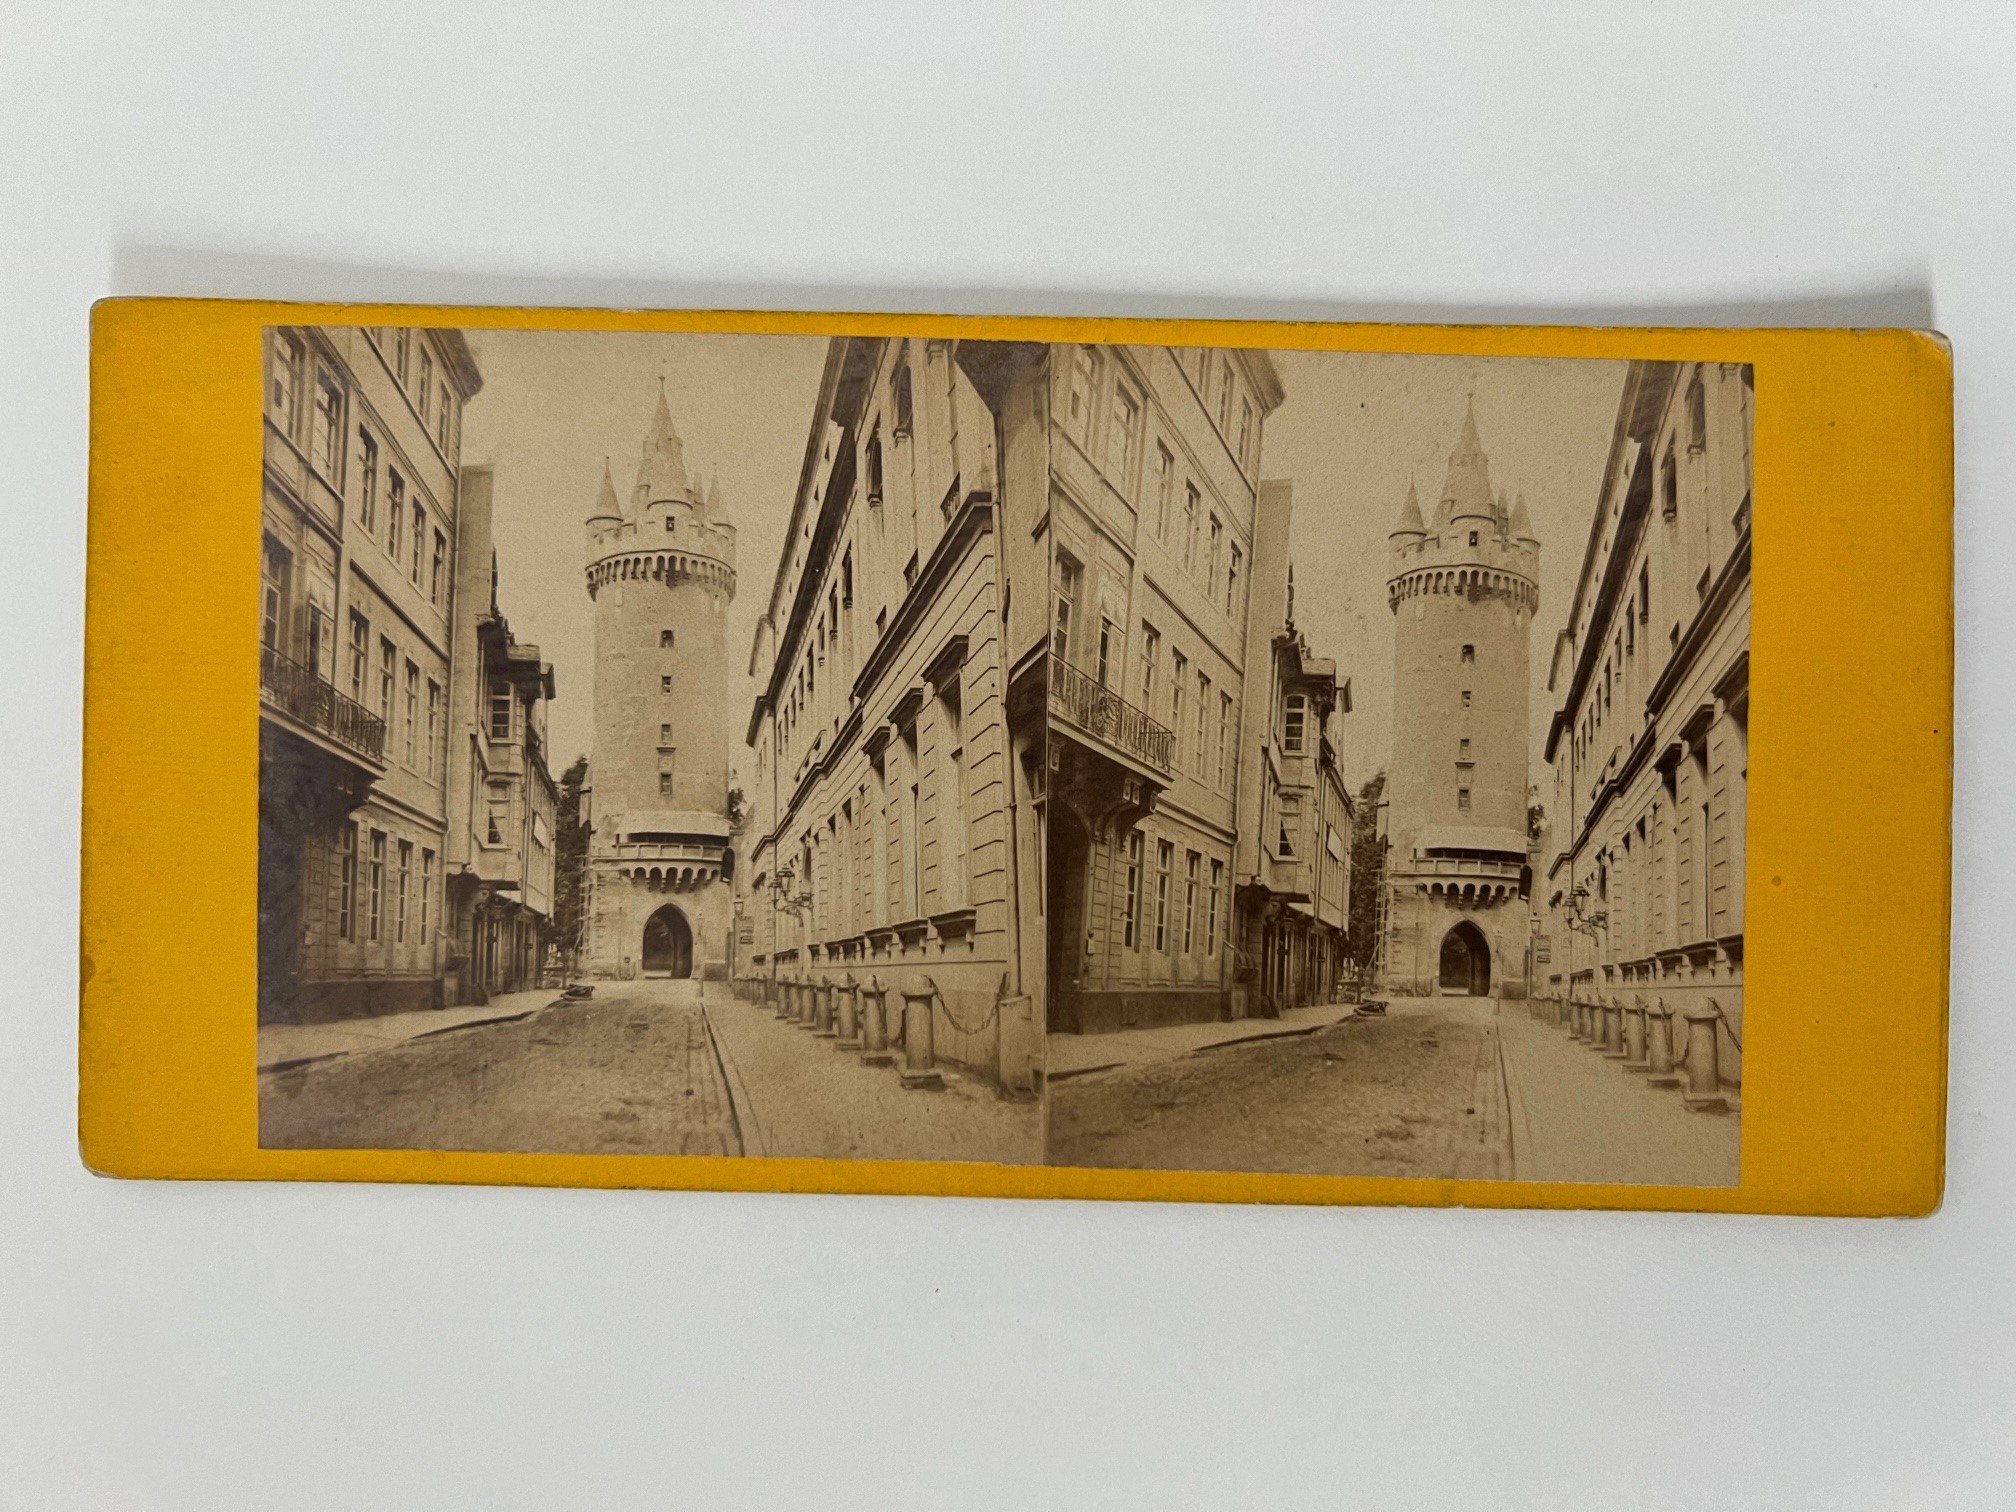 Stereobild, Unbekannter Fotograf, Frankfurt, Große Eschenheimer Strasse, ca. 1868. (Taunus-Rhein-Main - Regionalgeschichtliche Sammlung Dr. Stefan Naas CC BY-NC-SA)